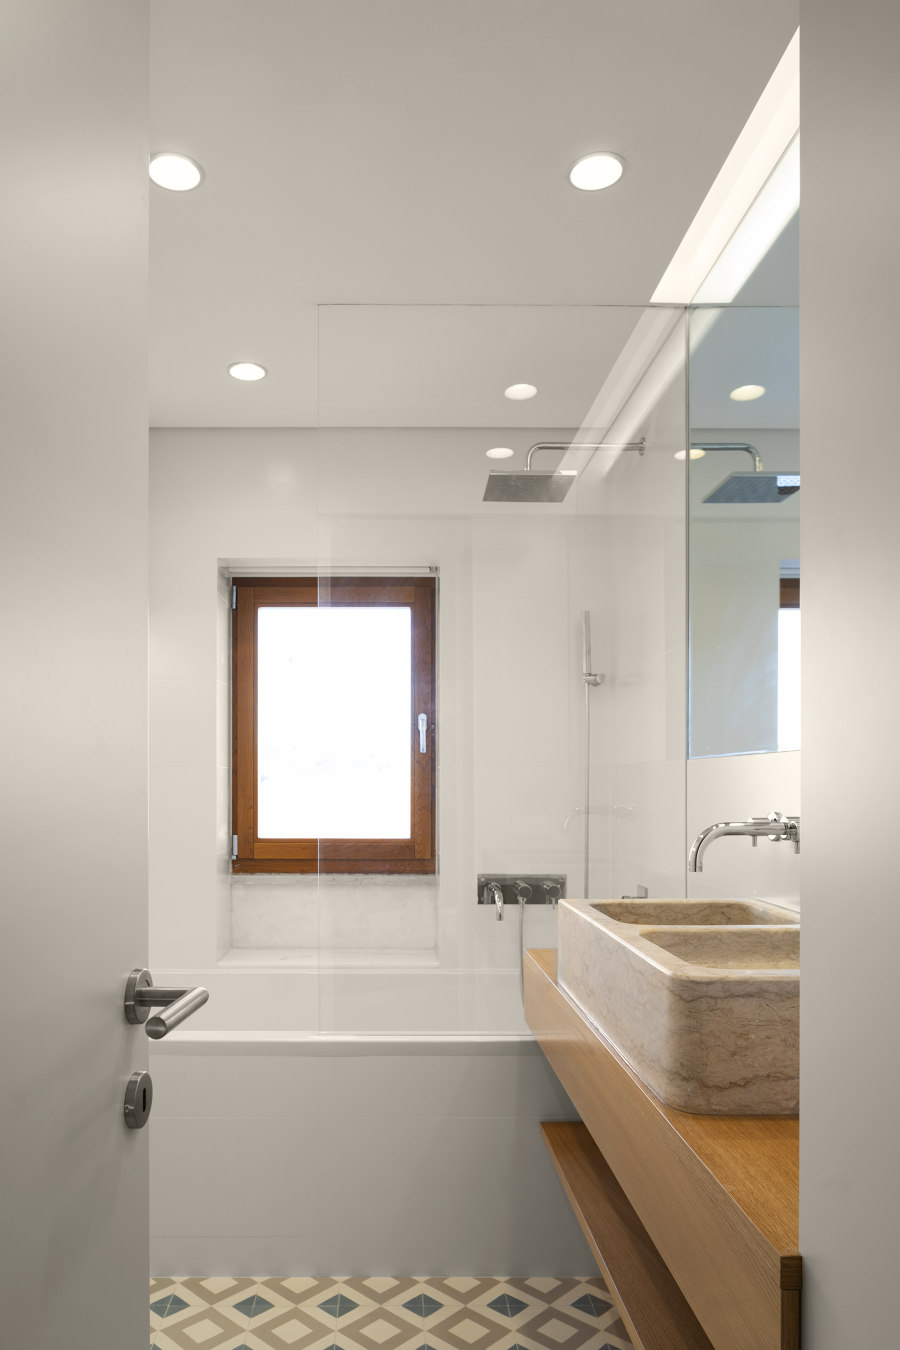 Phòng tắm sử dụng hệ thống đèn âm trần giúp nâng cao trần nhà kết hợp với cửa kính trong suốt cho cái nhìn tươi sáng khắp không gian thư giãn.